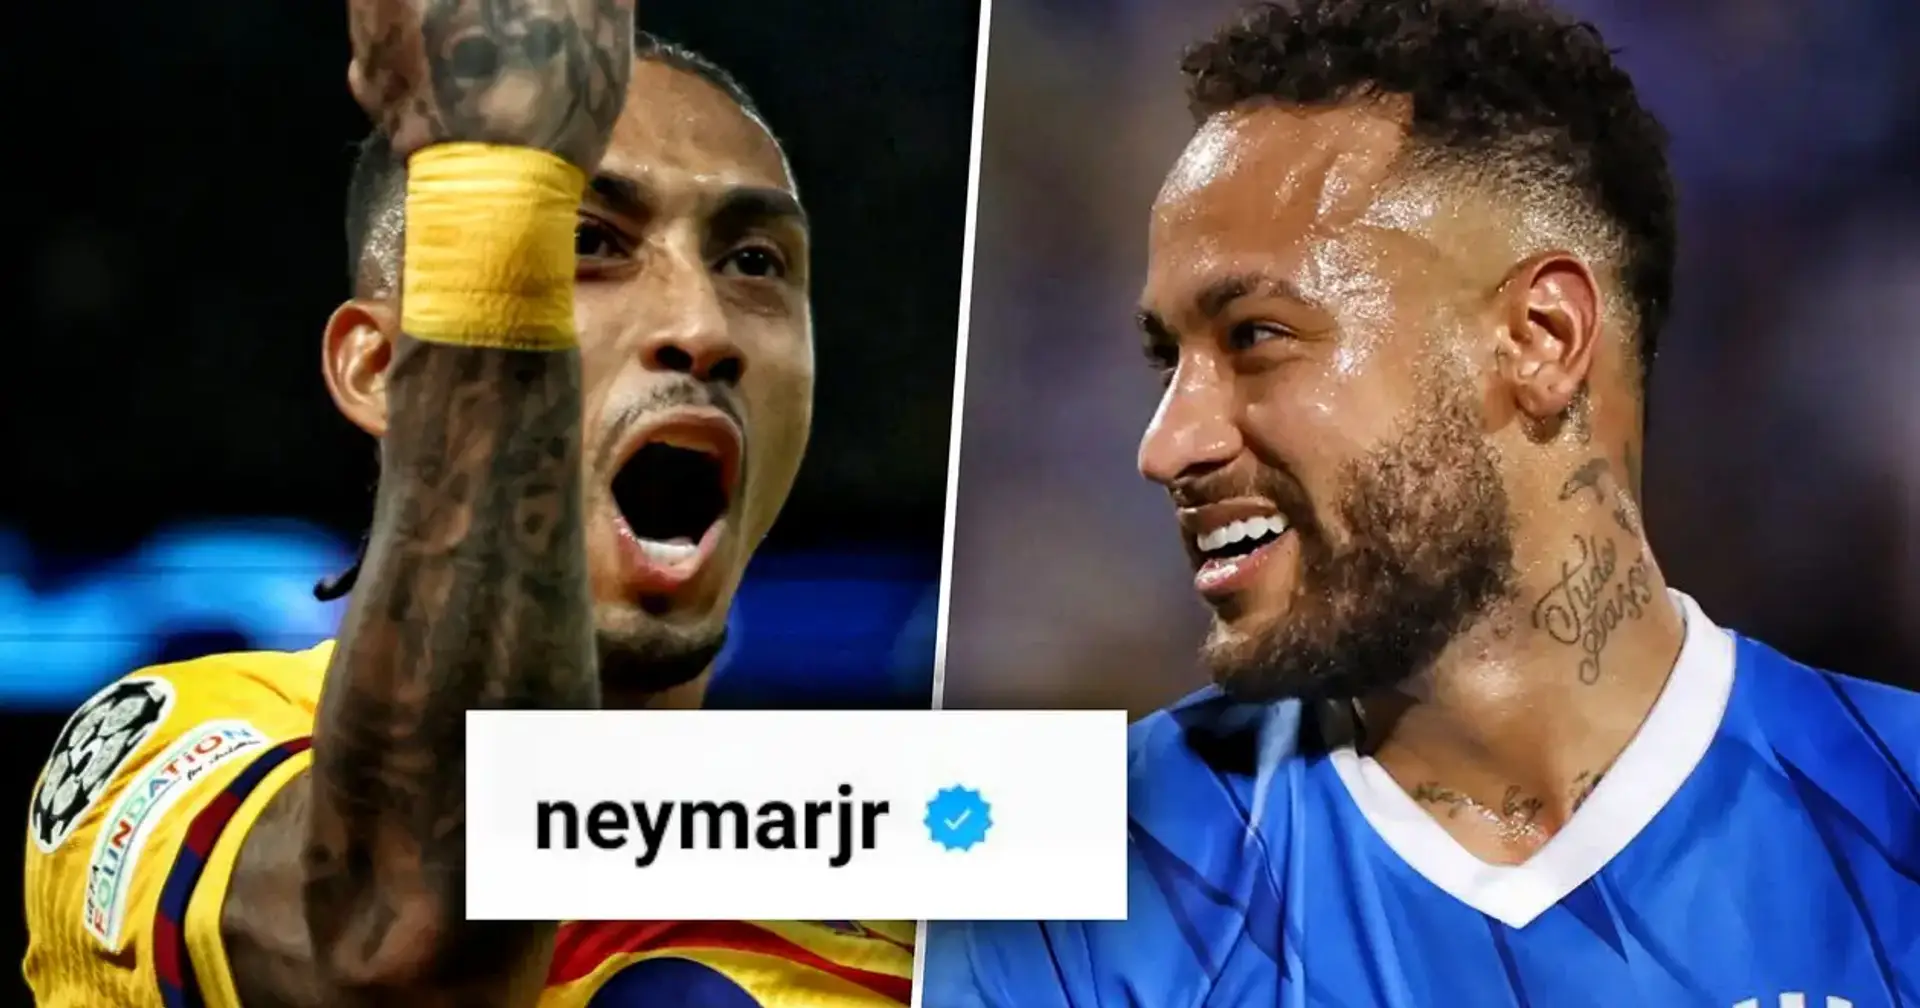 Neymars Kommentar unter dem Beitrag über Raphinha sammelte mehr als 121 Tausend Likes - was ist der Grund dafür?